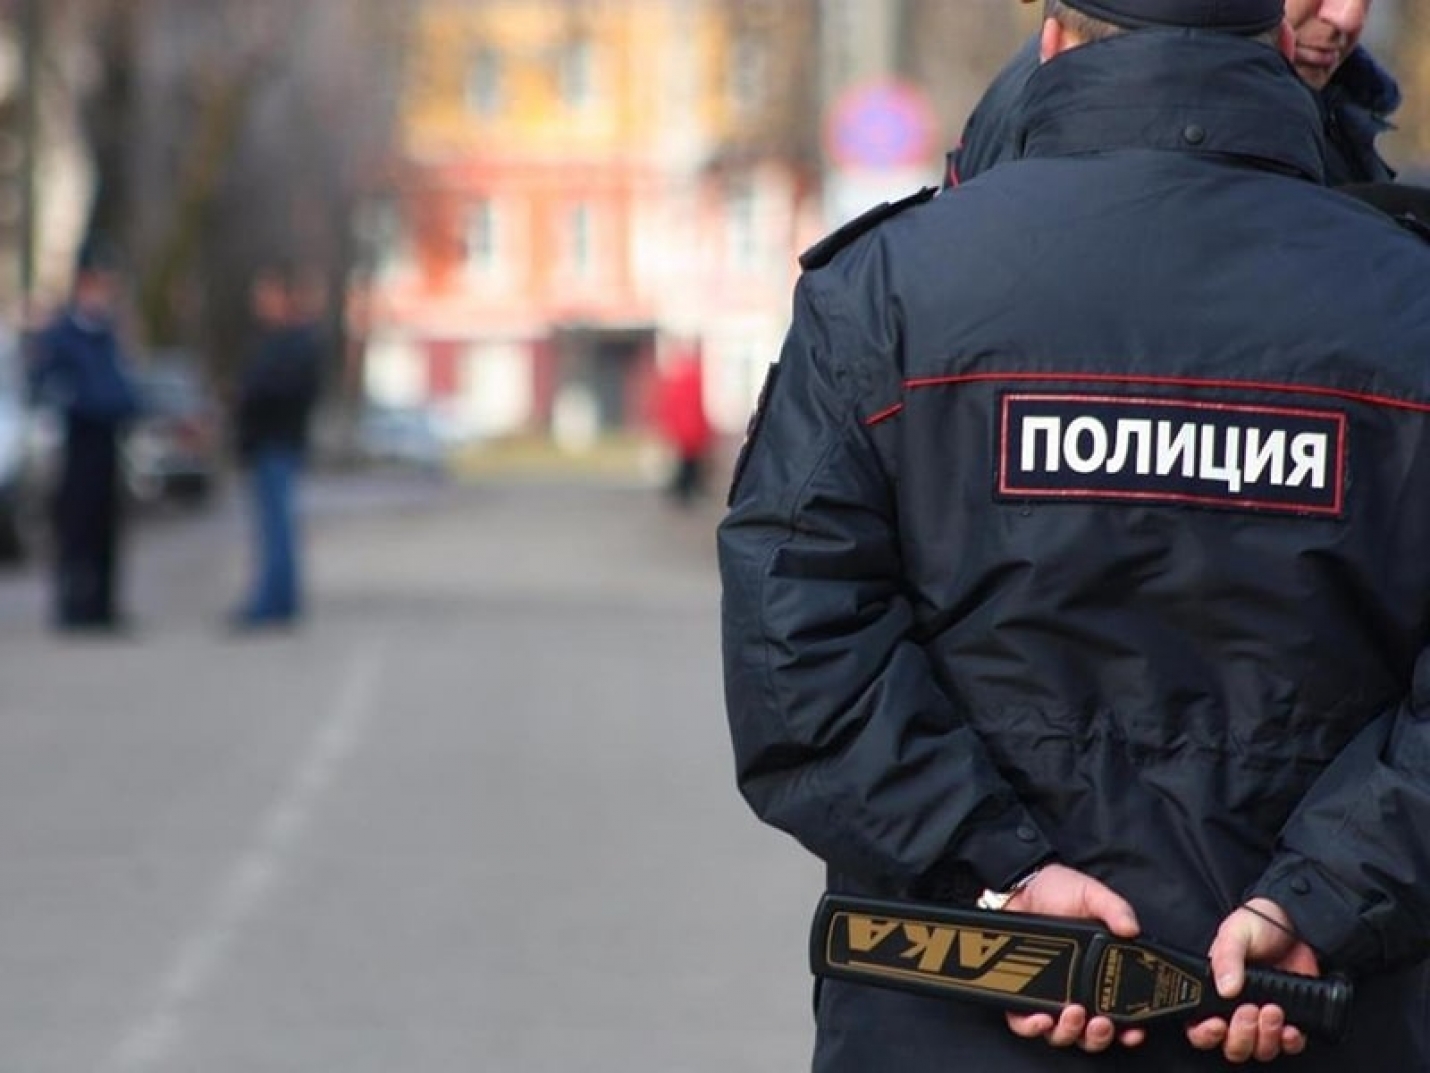 На севере Москвы задержали подозреваемого в сбыте наркотиков